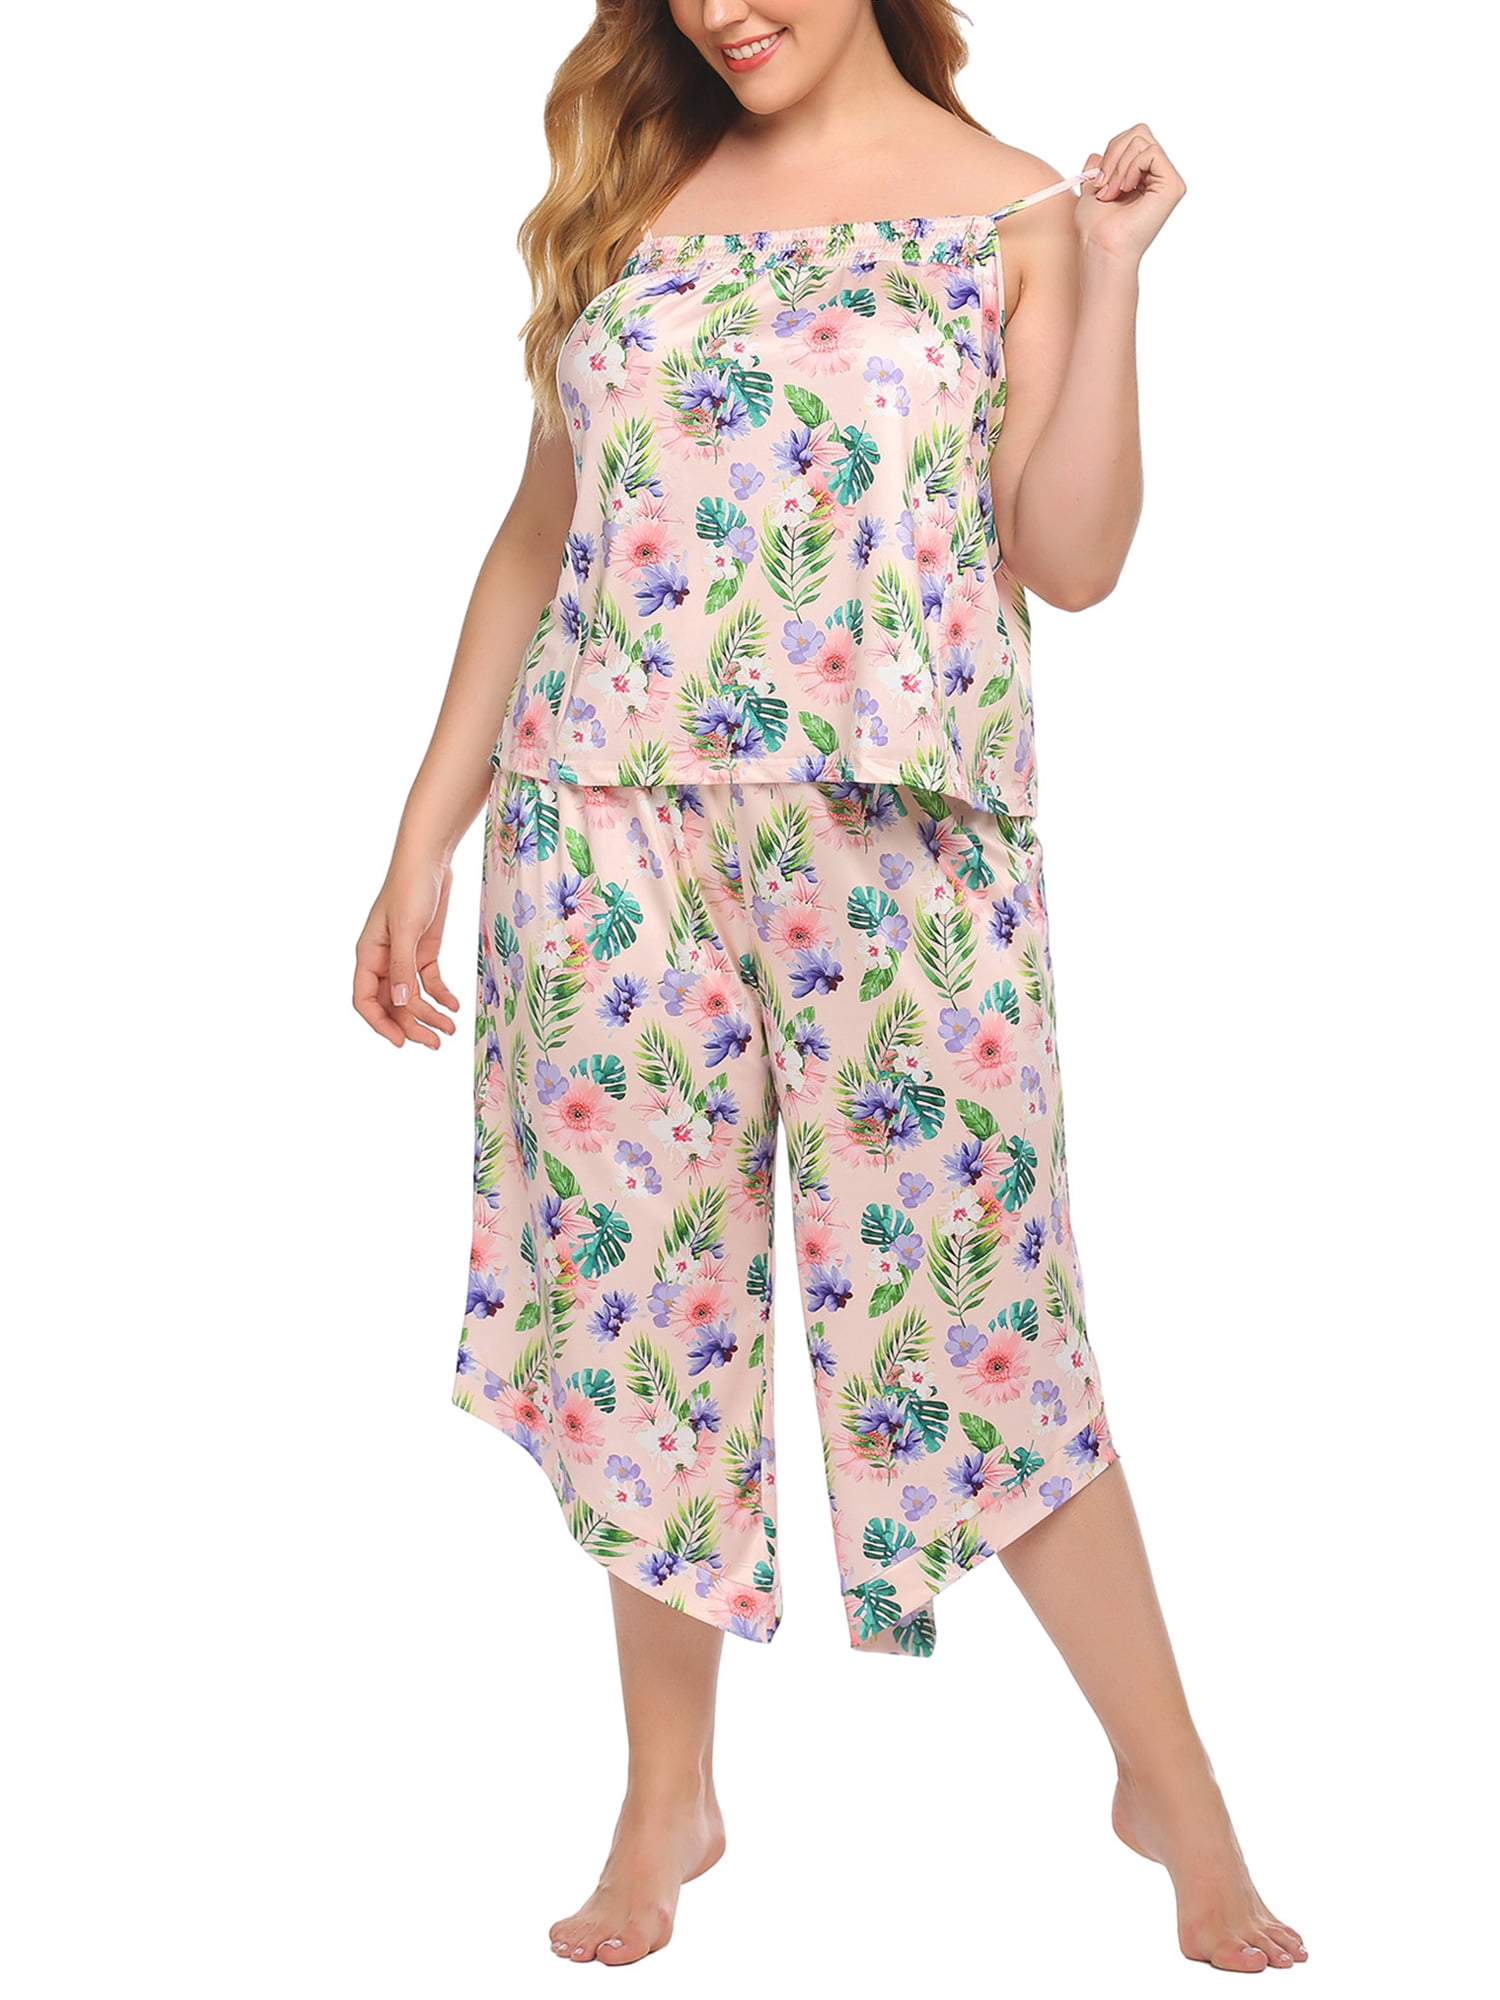 Fabulous Price “MADE I Pajamas Ladies Cotton Gauze Lilac Sleeveless Capri Pants 